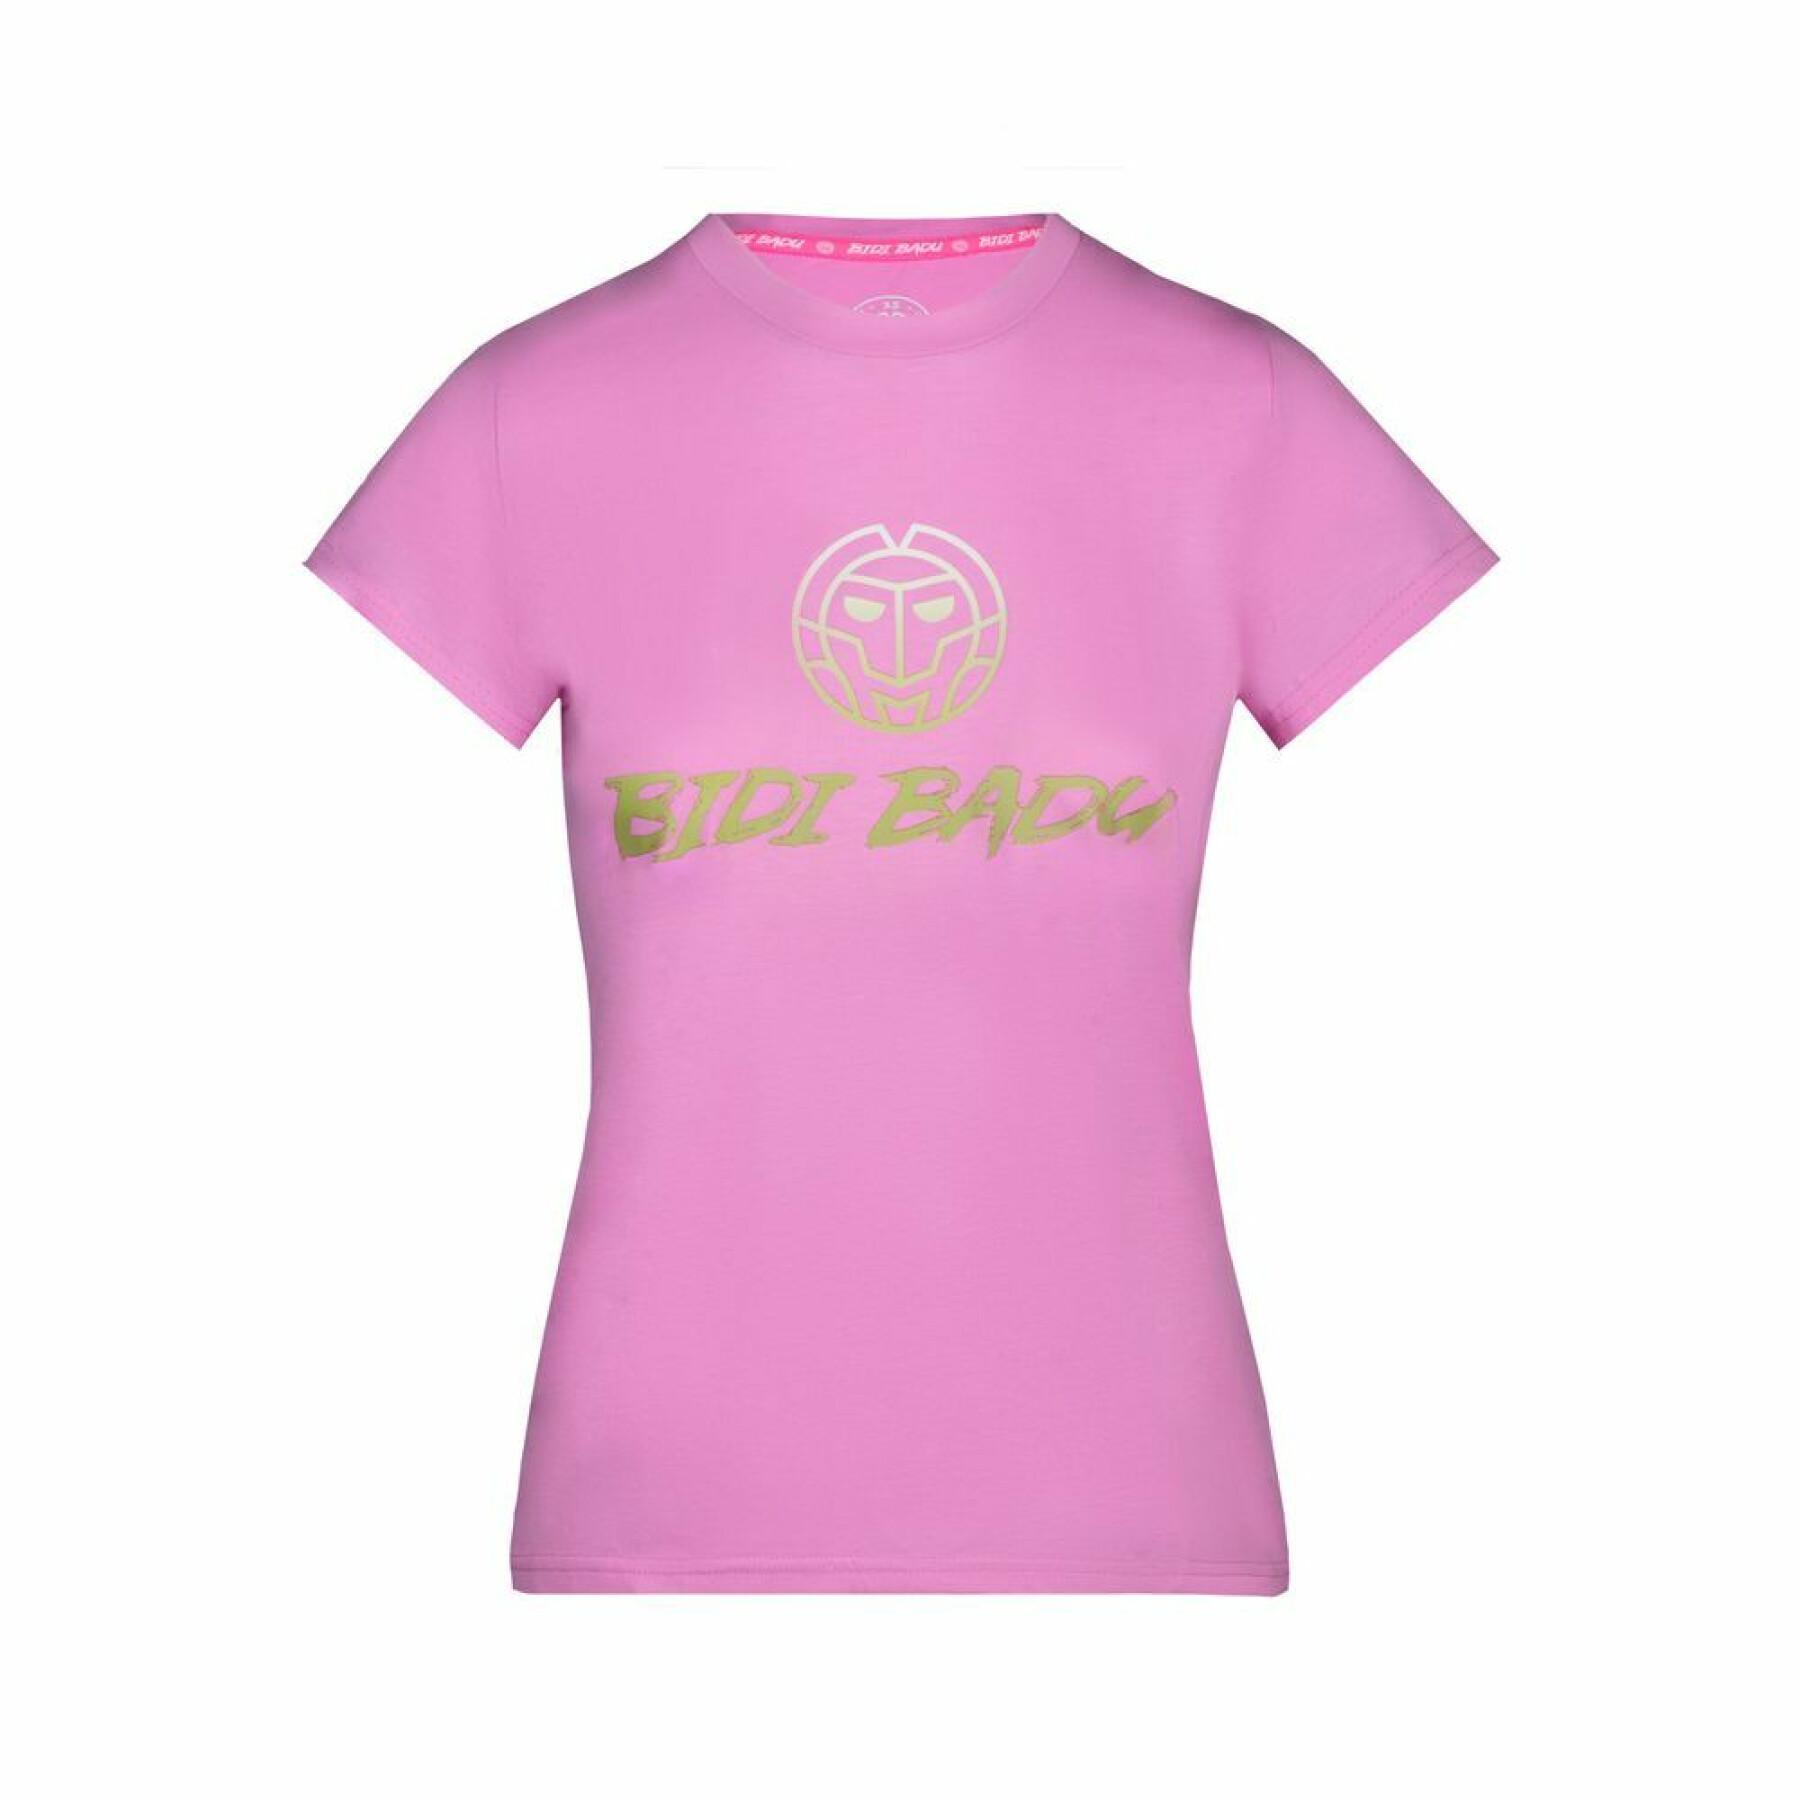 Meisjes-T-shirt Bidi Badu Chinara Basic Logo